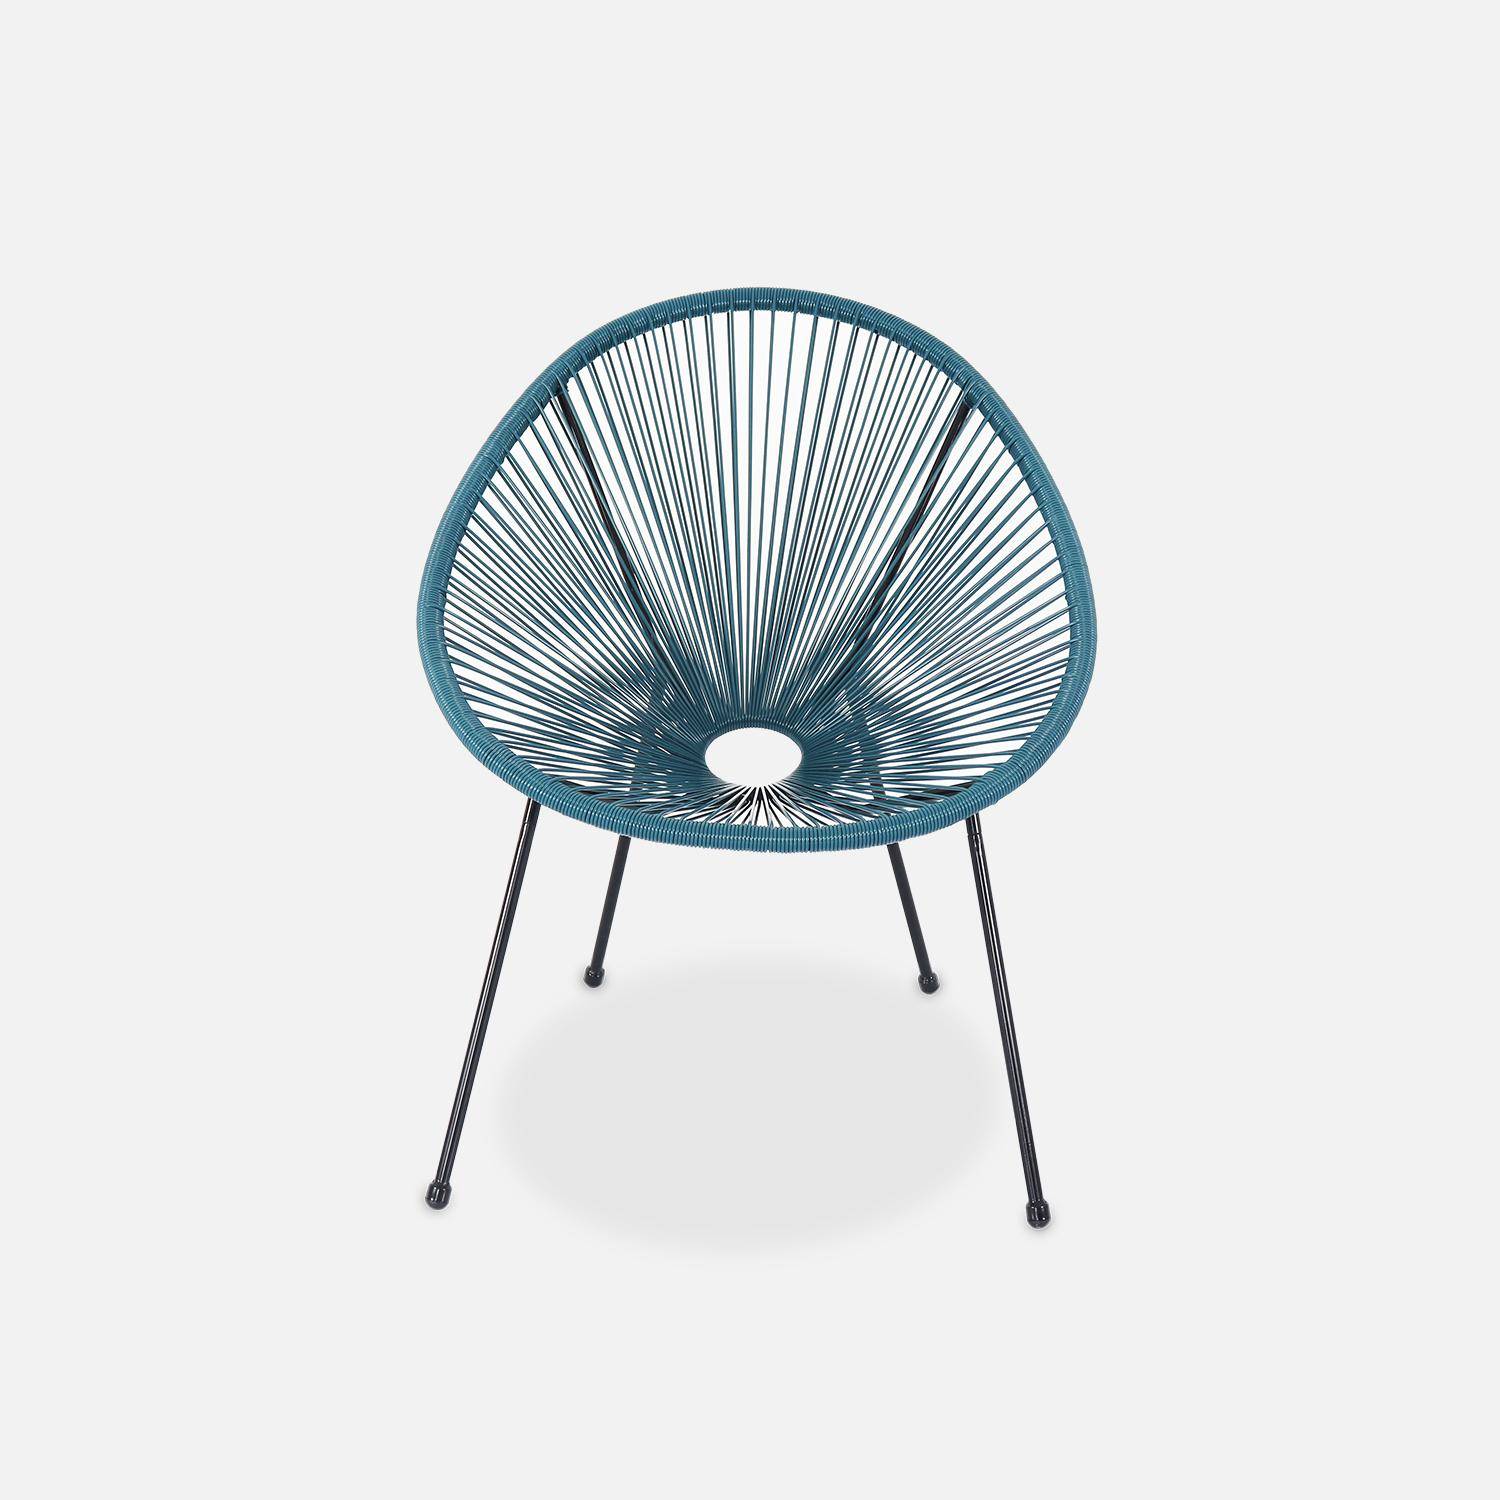 Lot de 2 fauteuils design Oeuf - Acapulco bleu canard - Fauteuils 4 pieds design rétro, cordage plastique, intérieur / extérieur Photo4